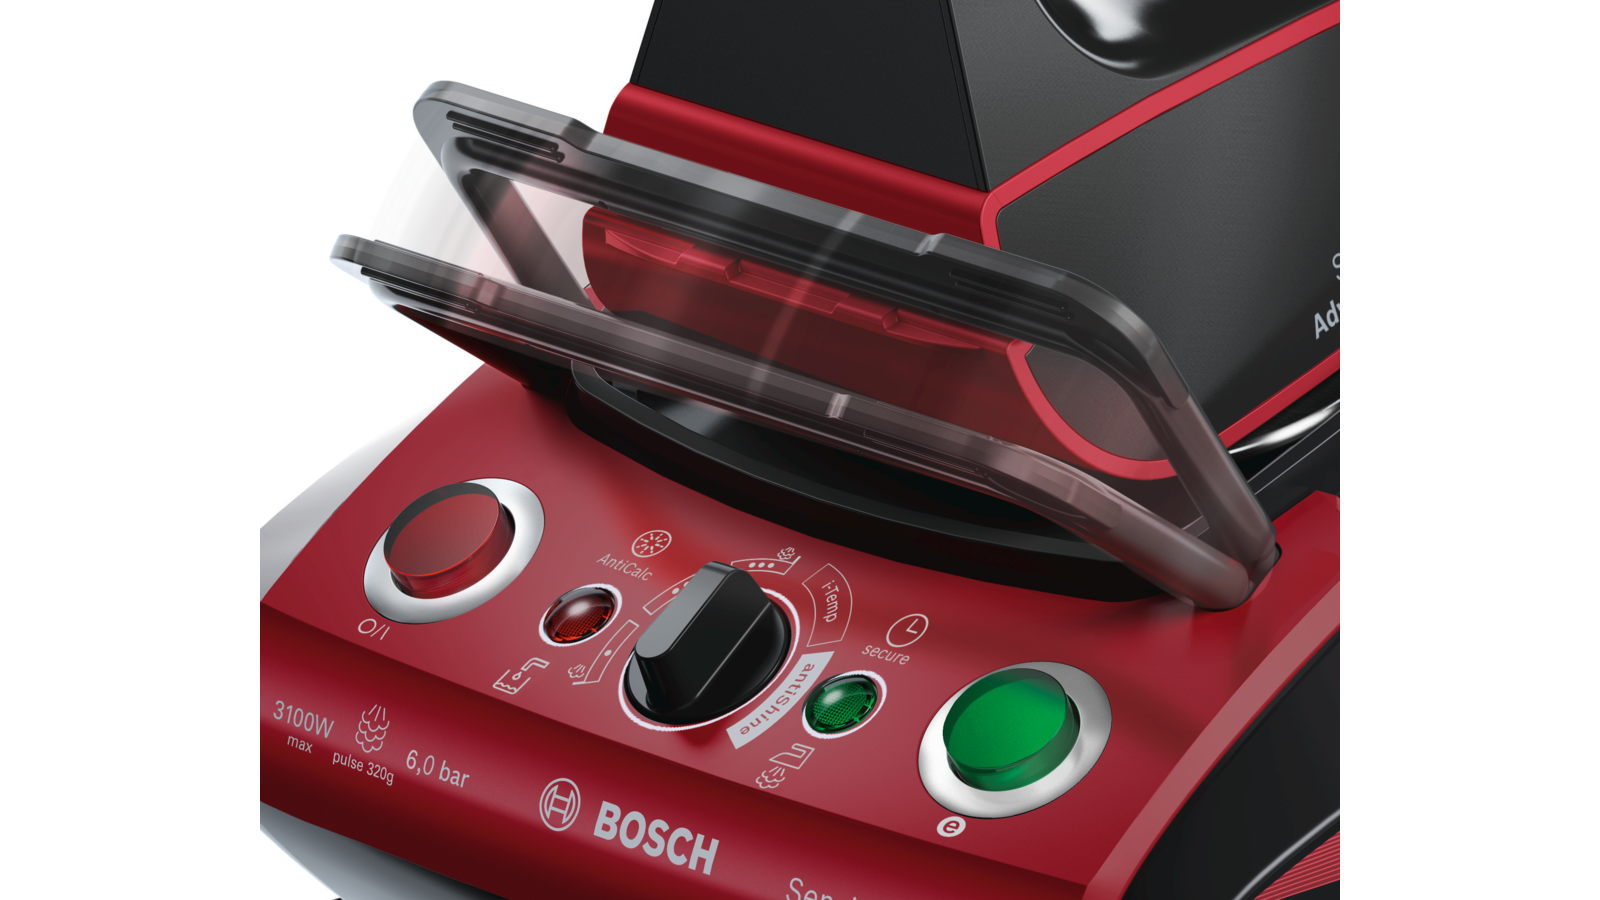 Bosch sensixx advanced steam как разобрать фото 105